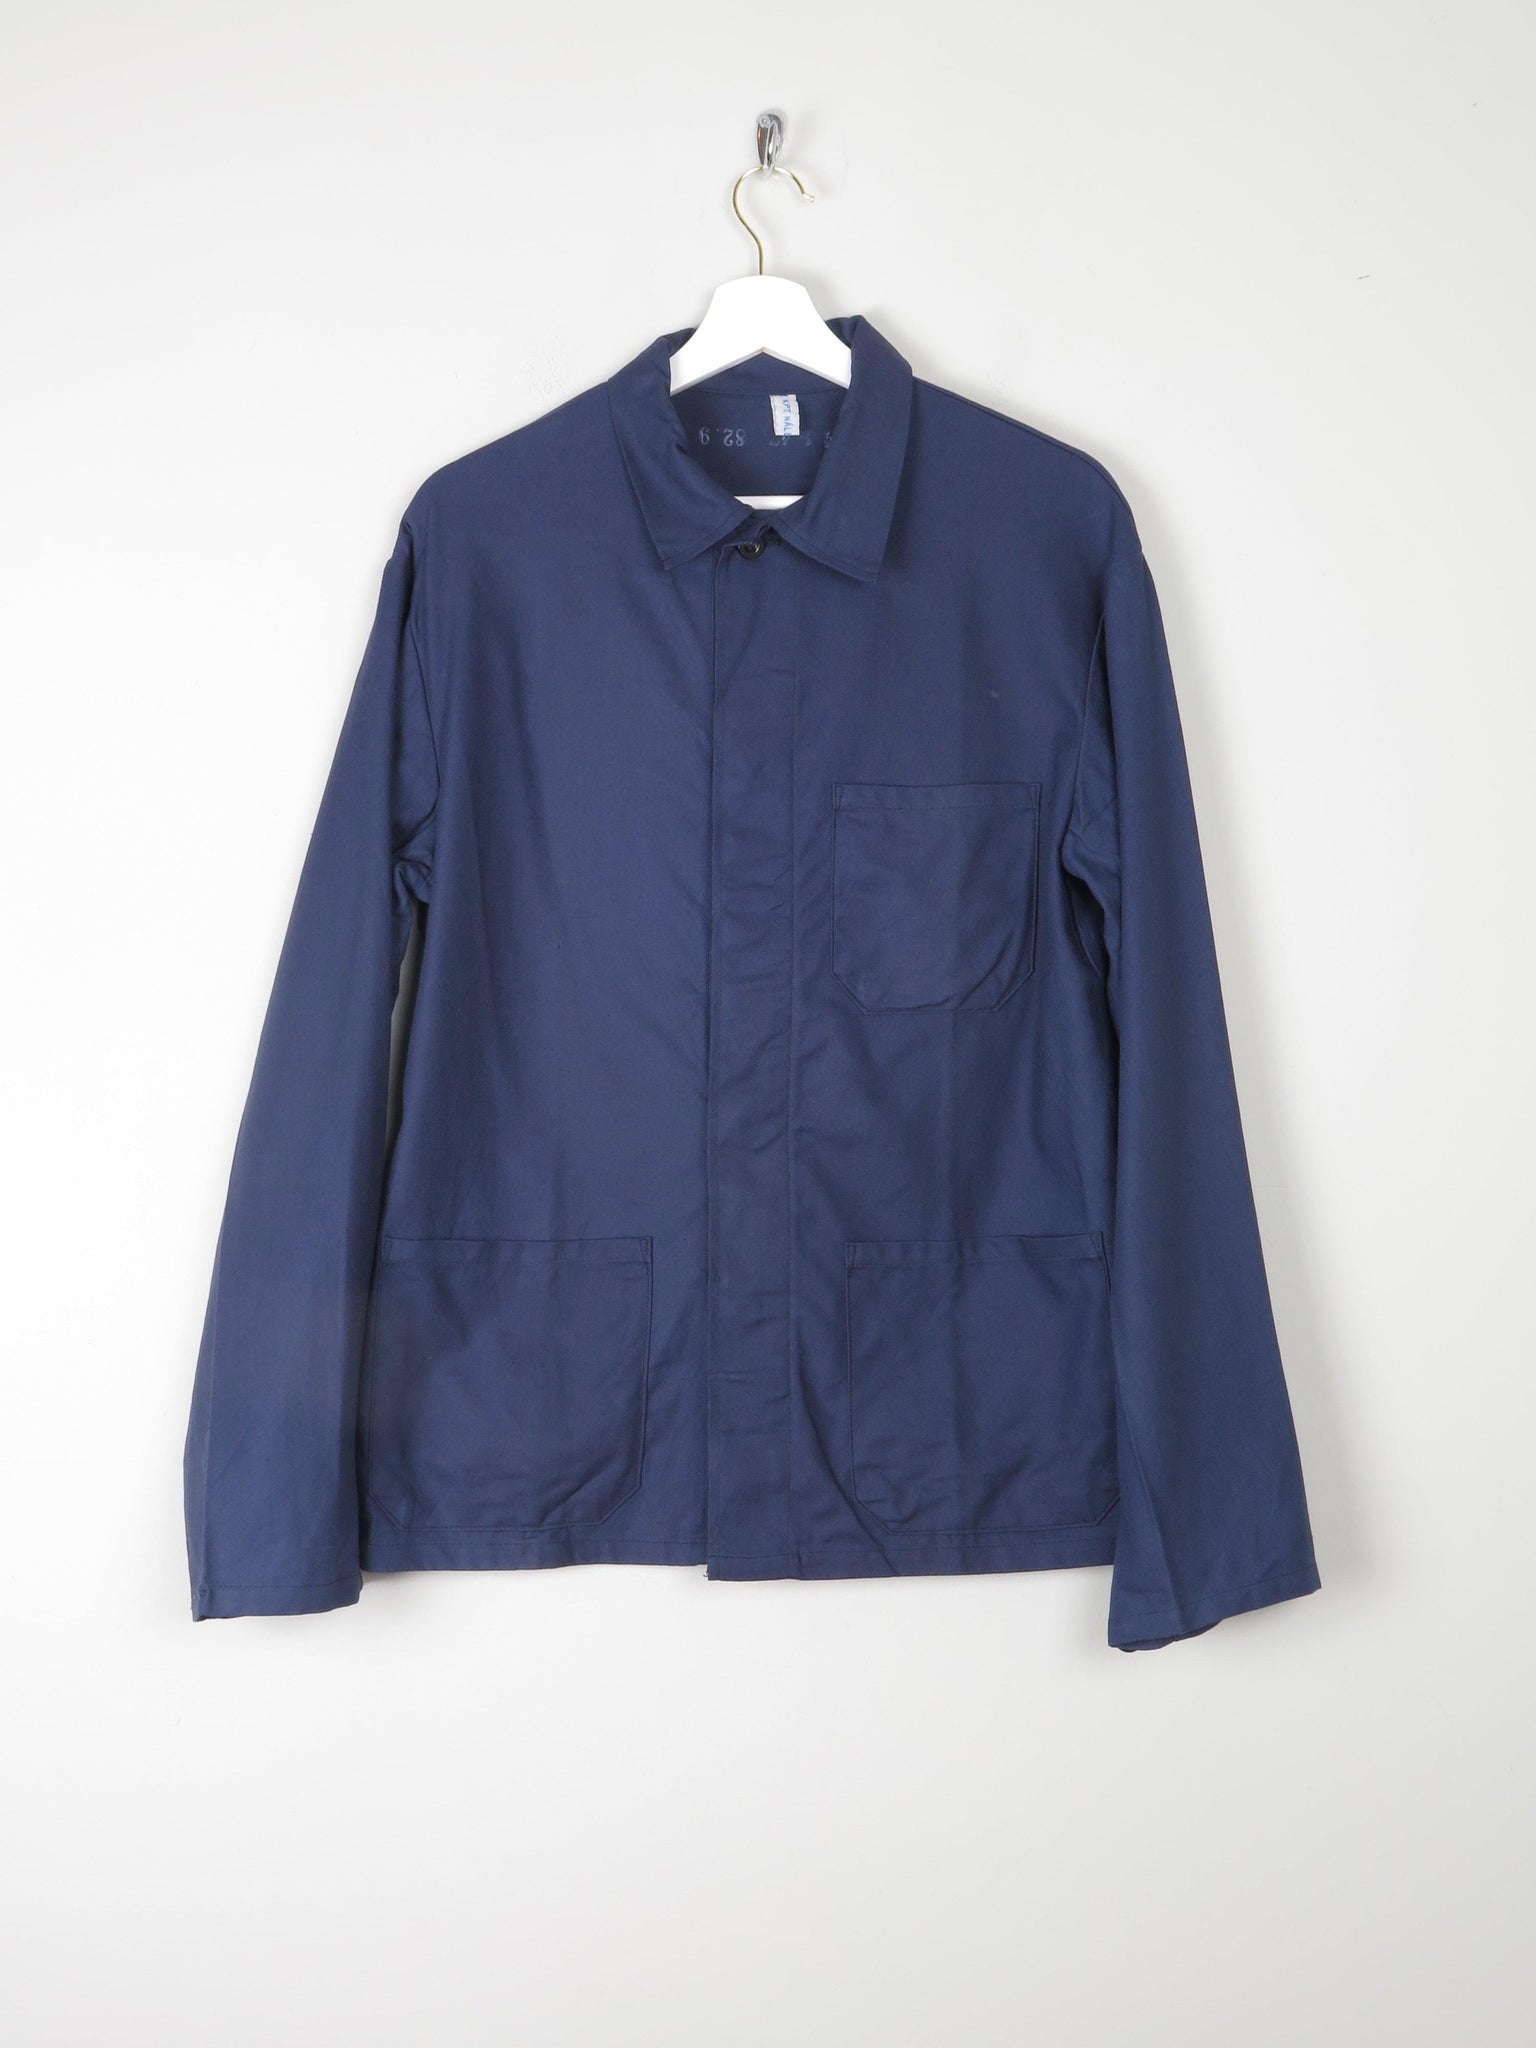 Men's Indigo Blue Vintage Work Jacket S - The Harlequin